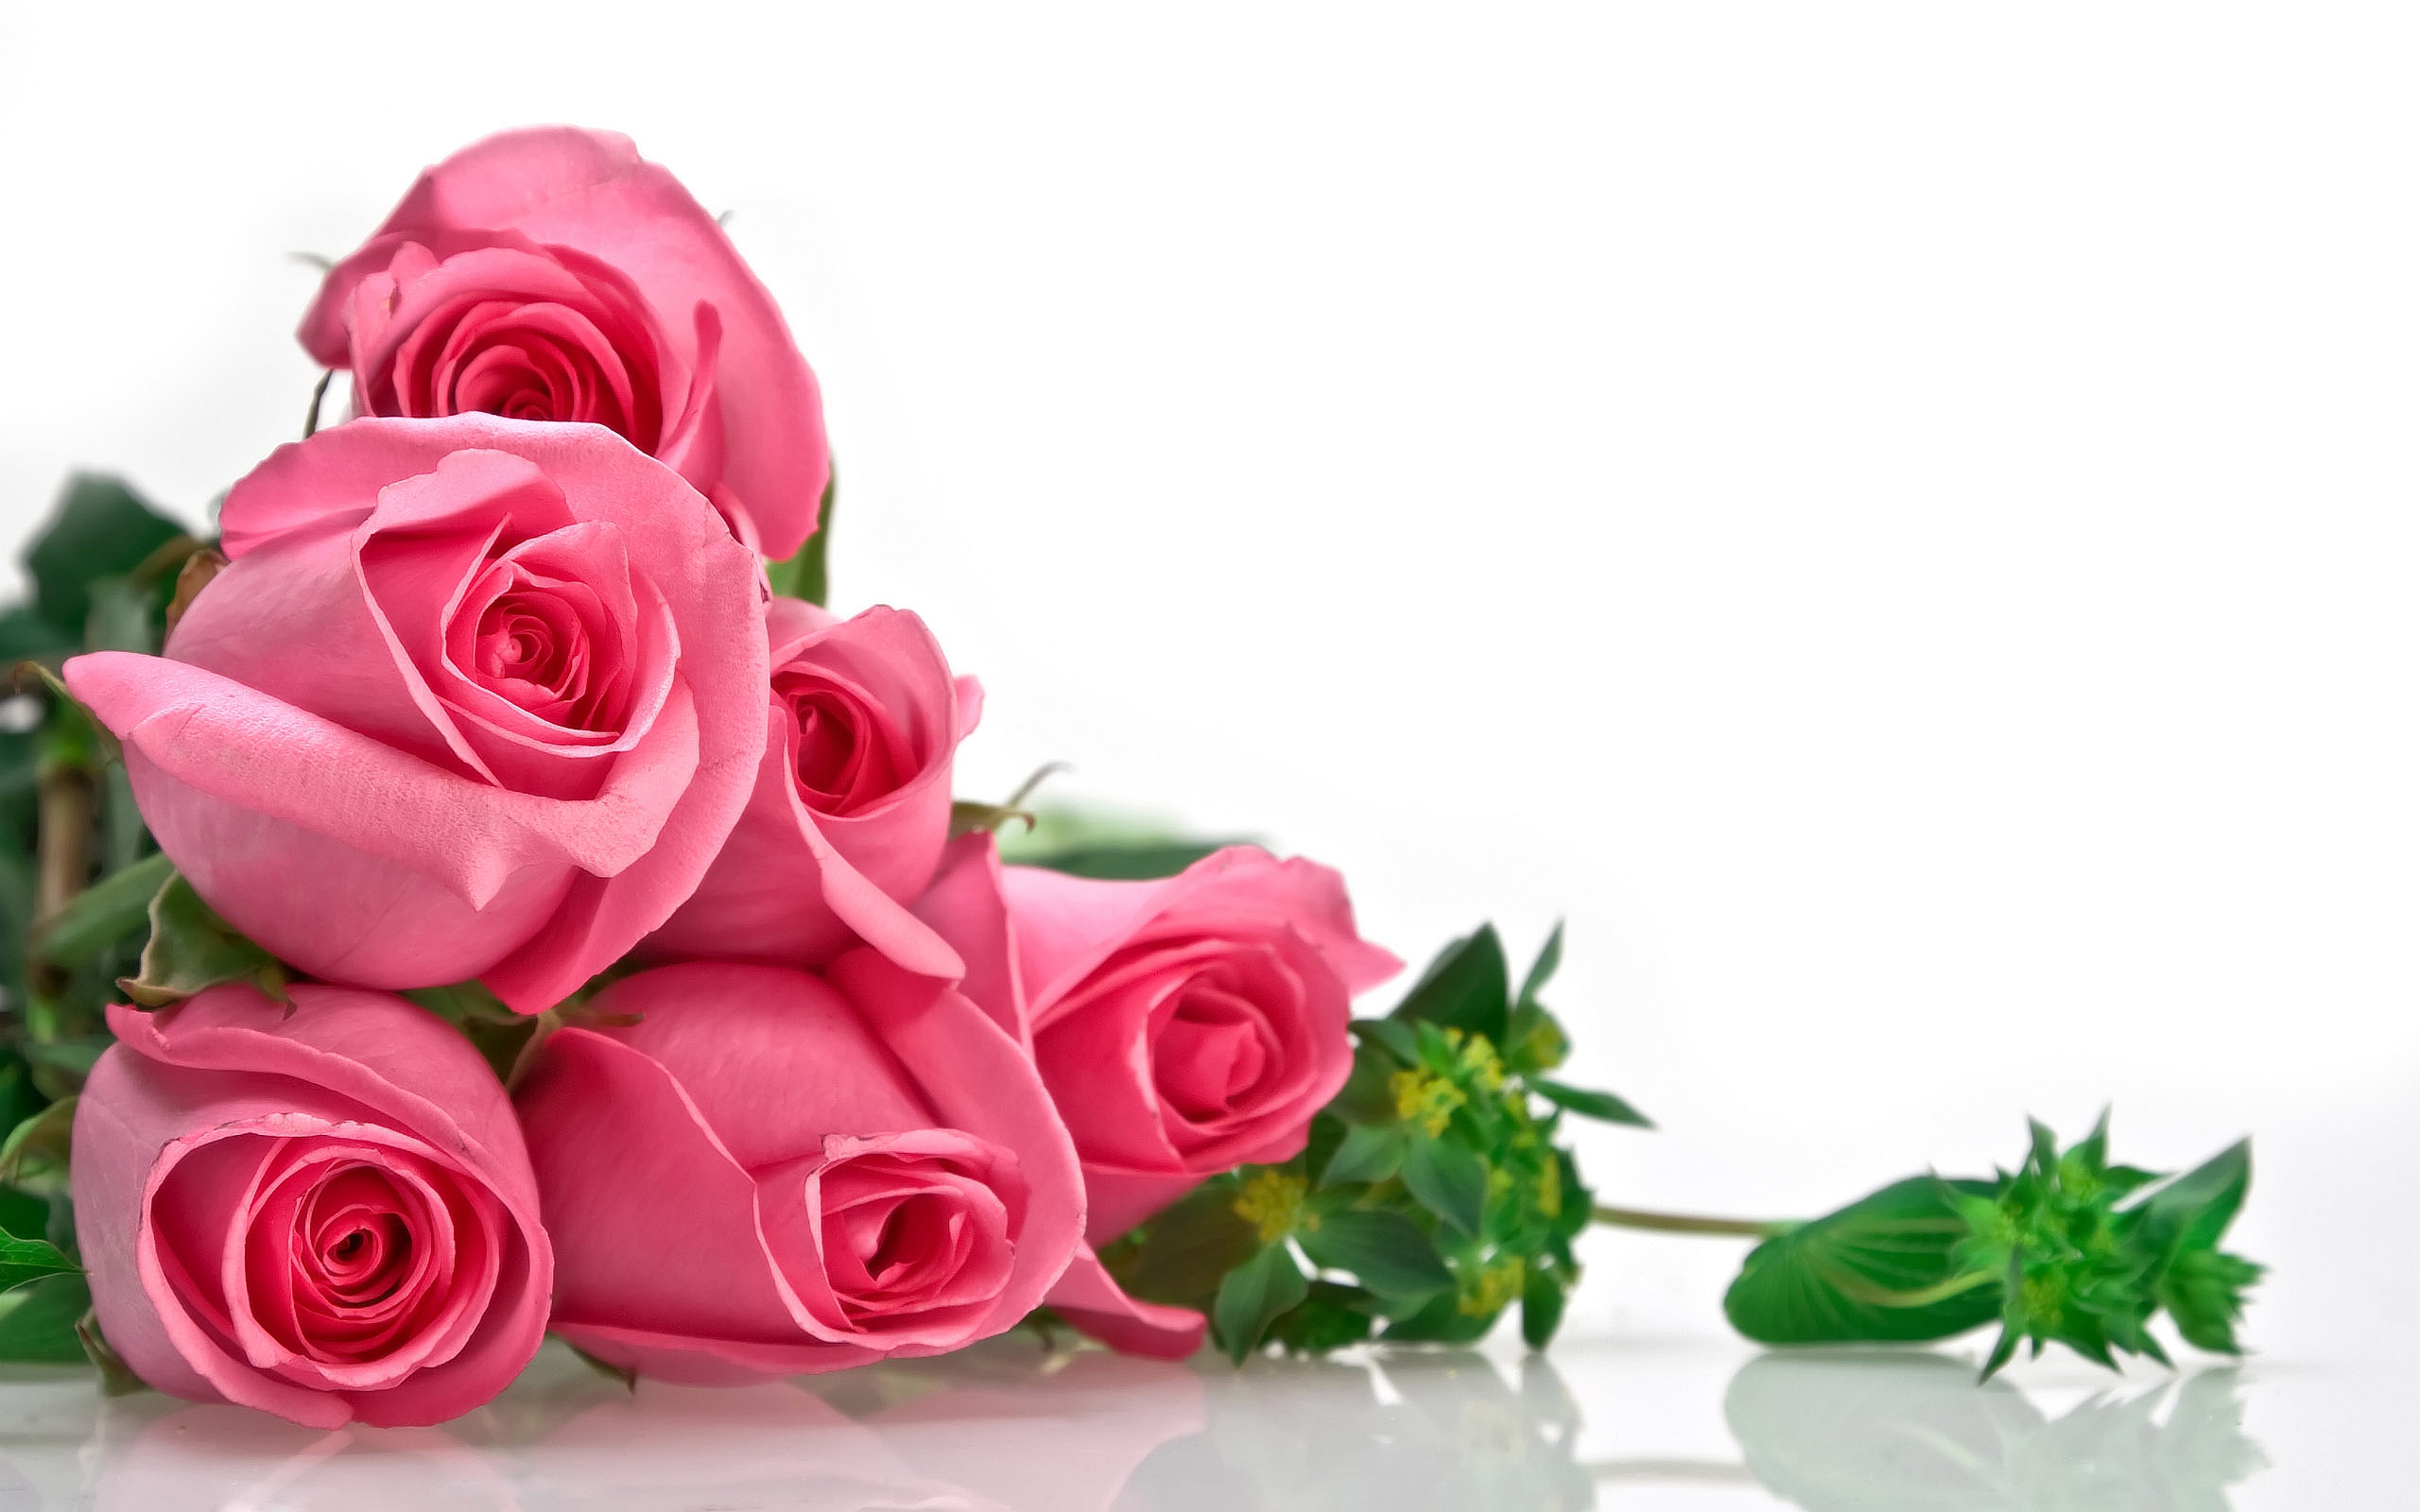 2541 7 صور اجمل الورود - الورود الاروع بالصور الاجمل دجانة جوهر